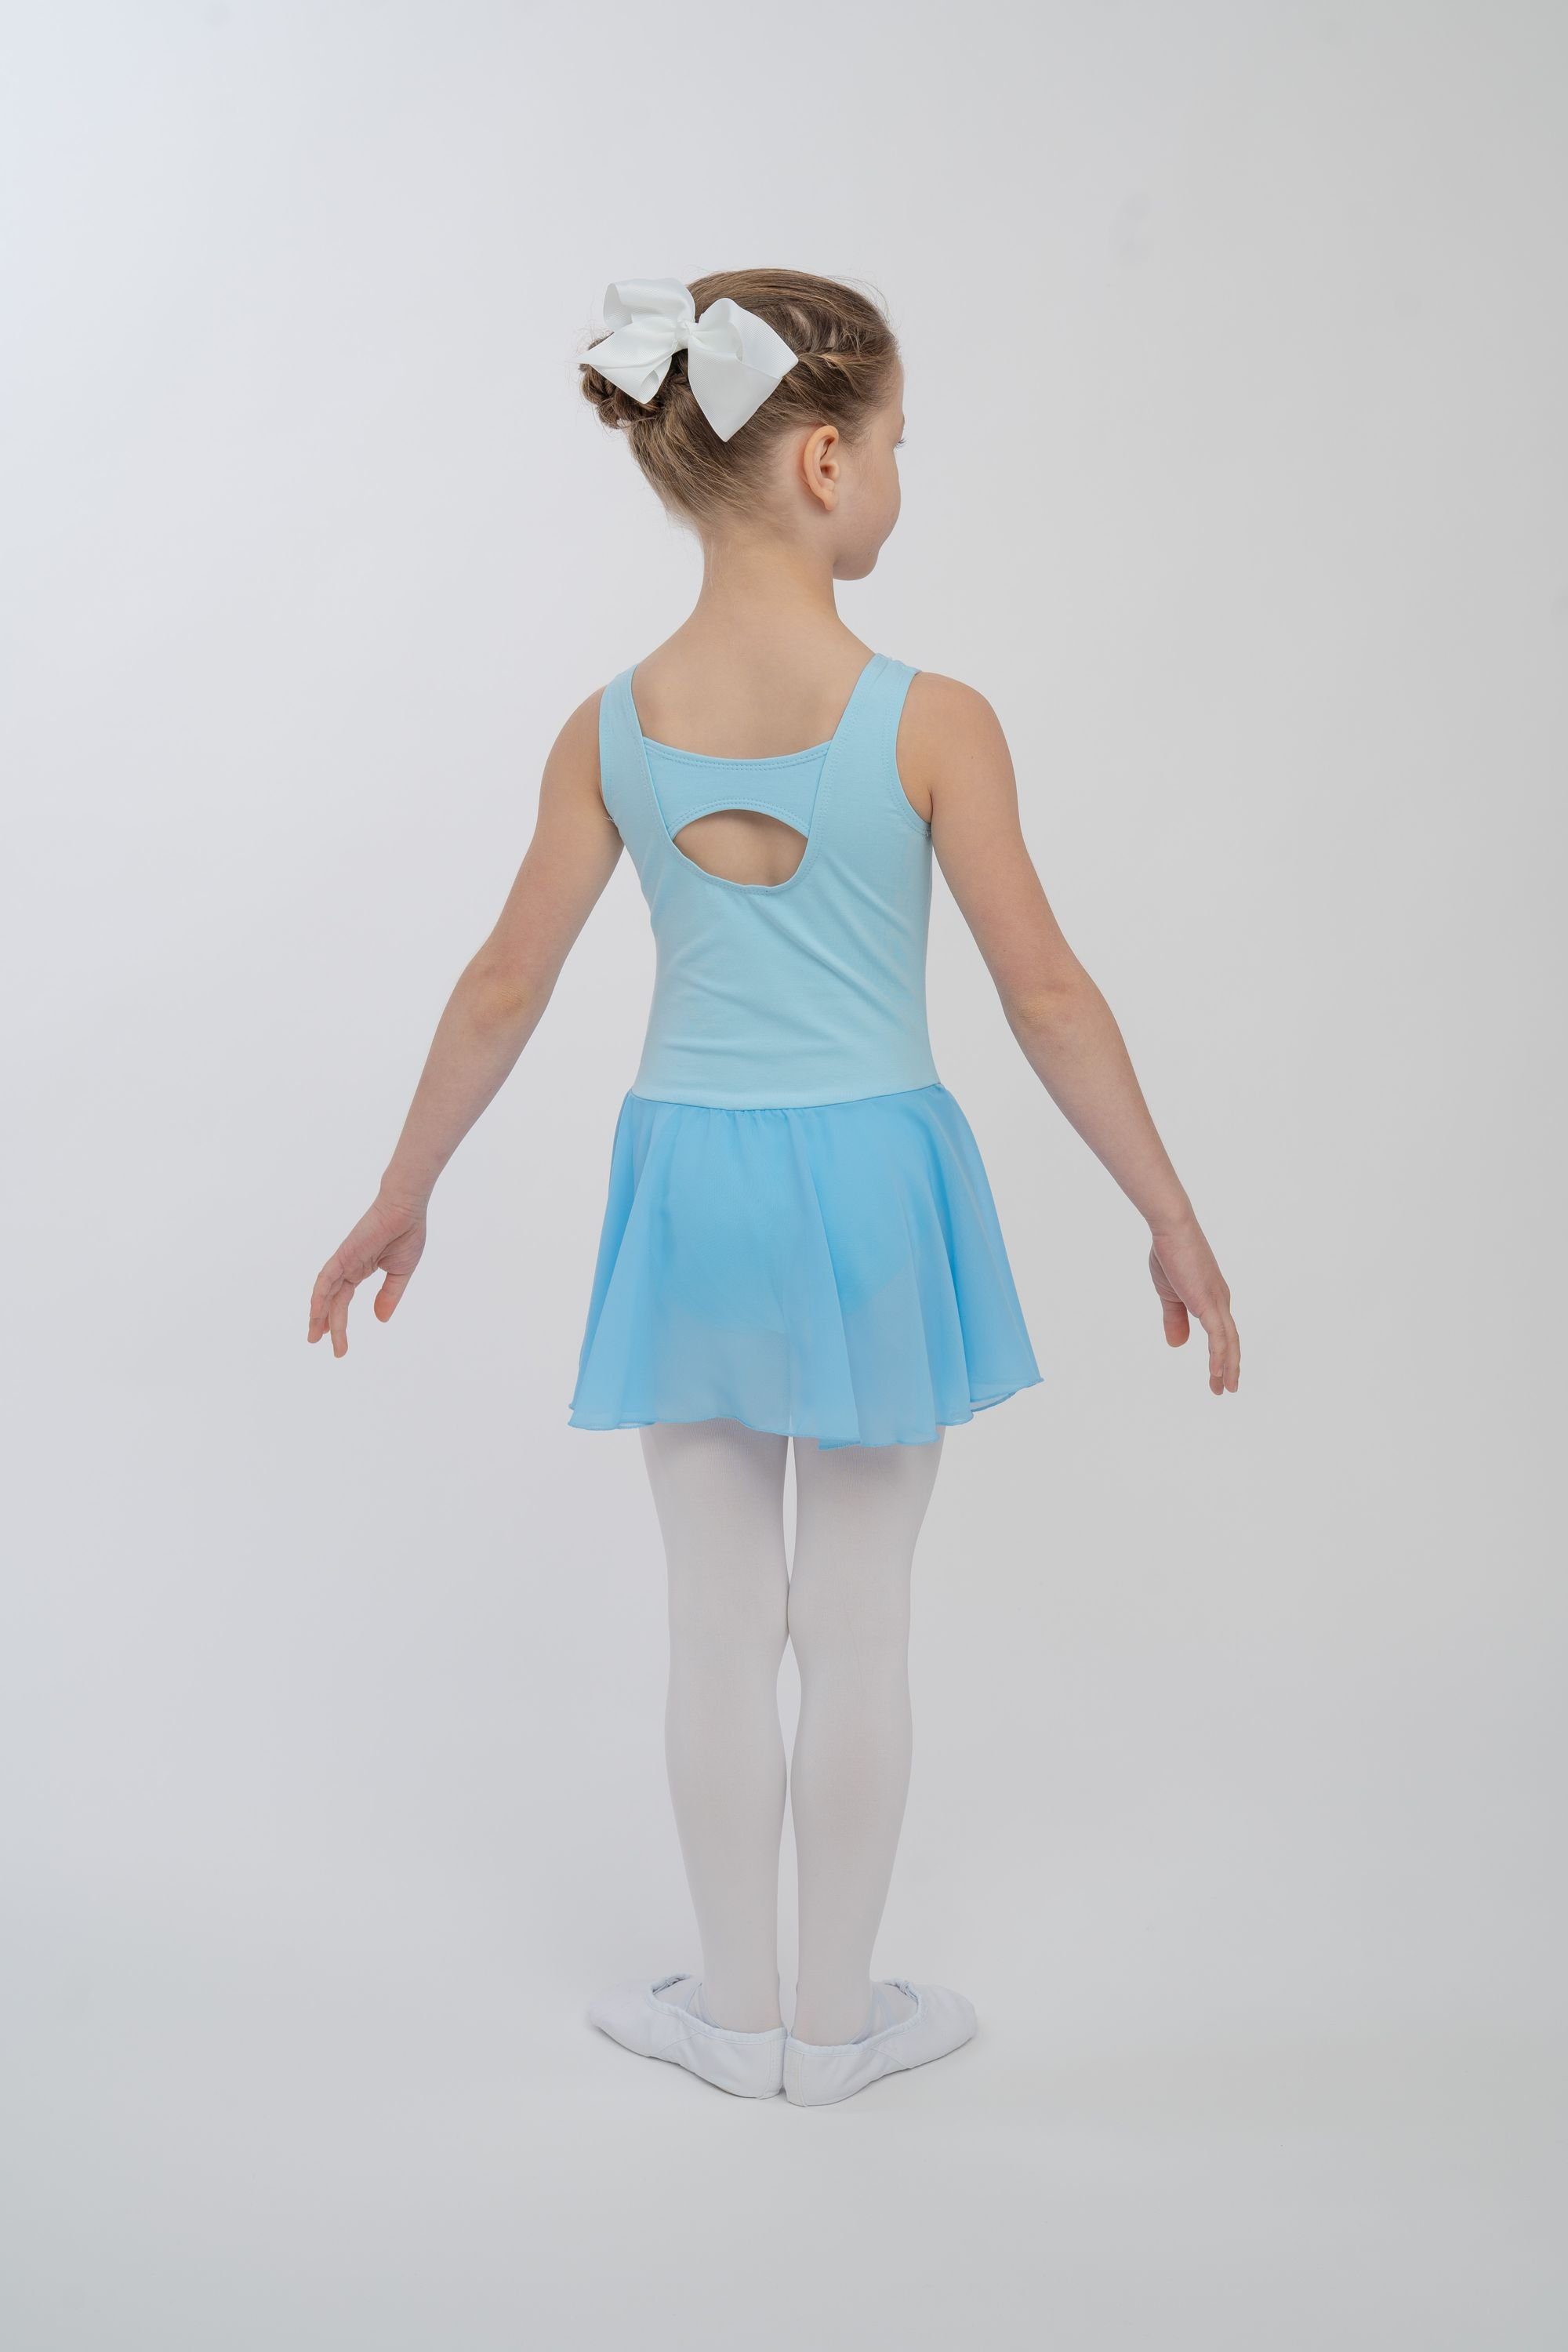 tanzmuster Chiffonkleid Ballettkleid Bella Schlüssellochausschnitt weicher Baumwolle Mädchen Ballett fürs aus für mit Kinder hellblau Ballettbody